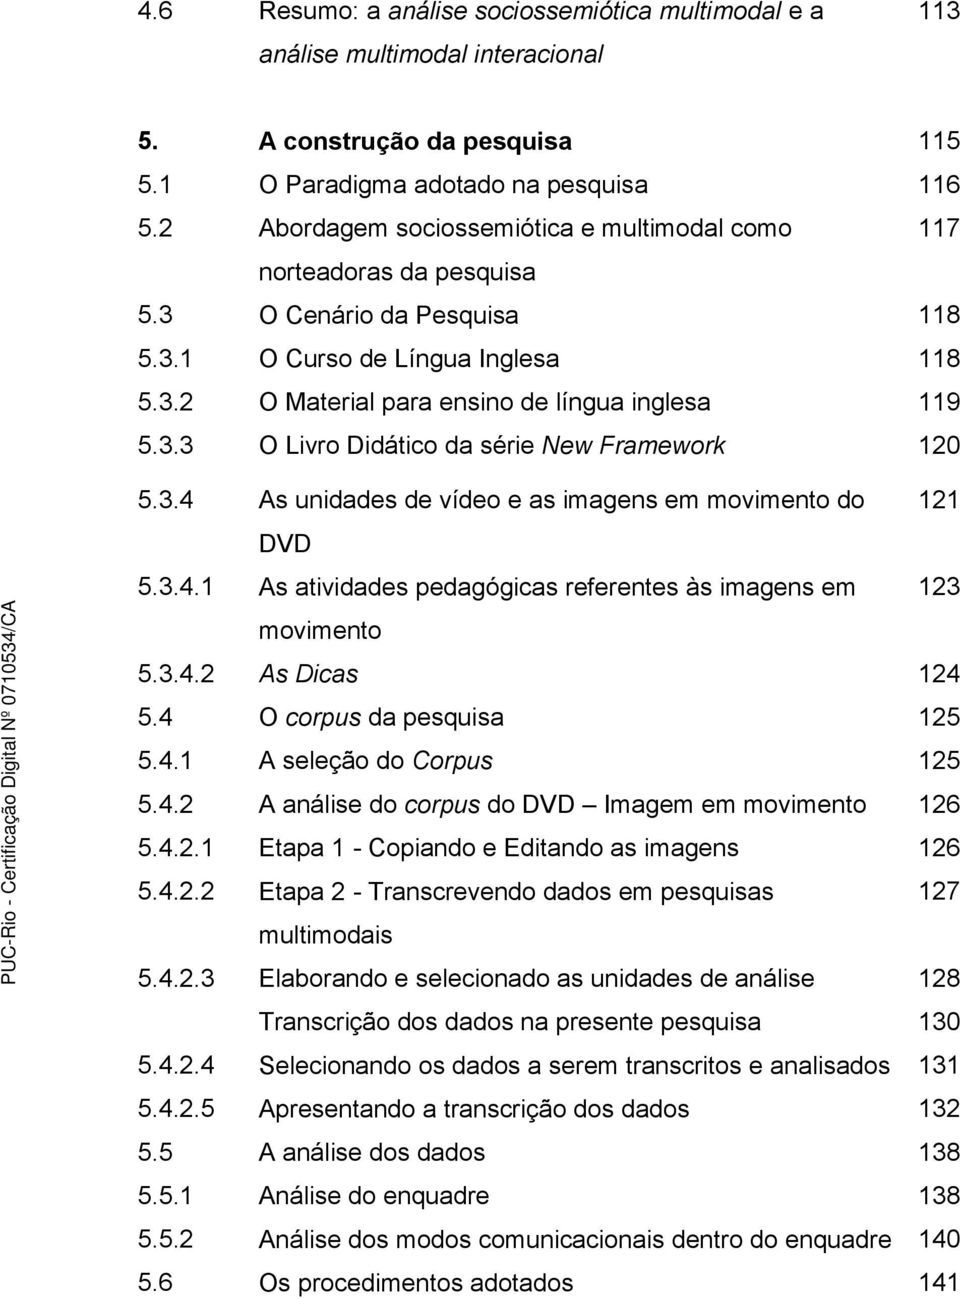 3.4 As unidades de vídeo e as imagens em movimento do 121 DVD 5.3.4.1 As atividades pedagógicas referentes às imagens em 123 movimento 5.3.4.2 As Dicas 124 5.4 O corpus da pesquisa 125 5.4.1 A seleção do Corpus 125 5.